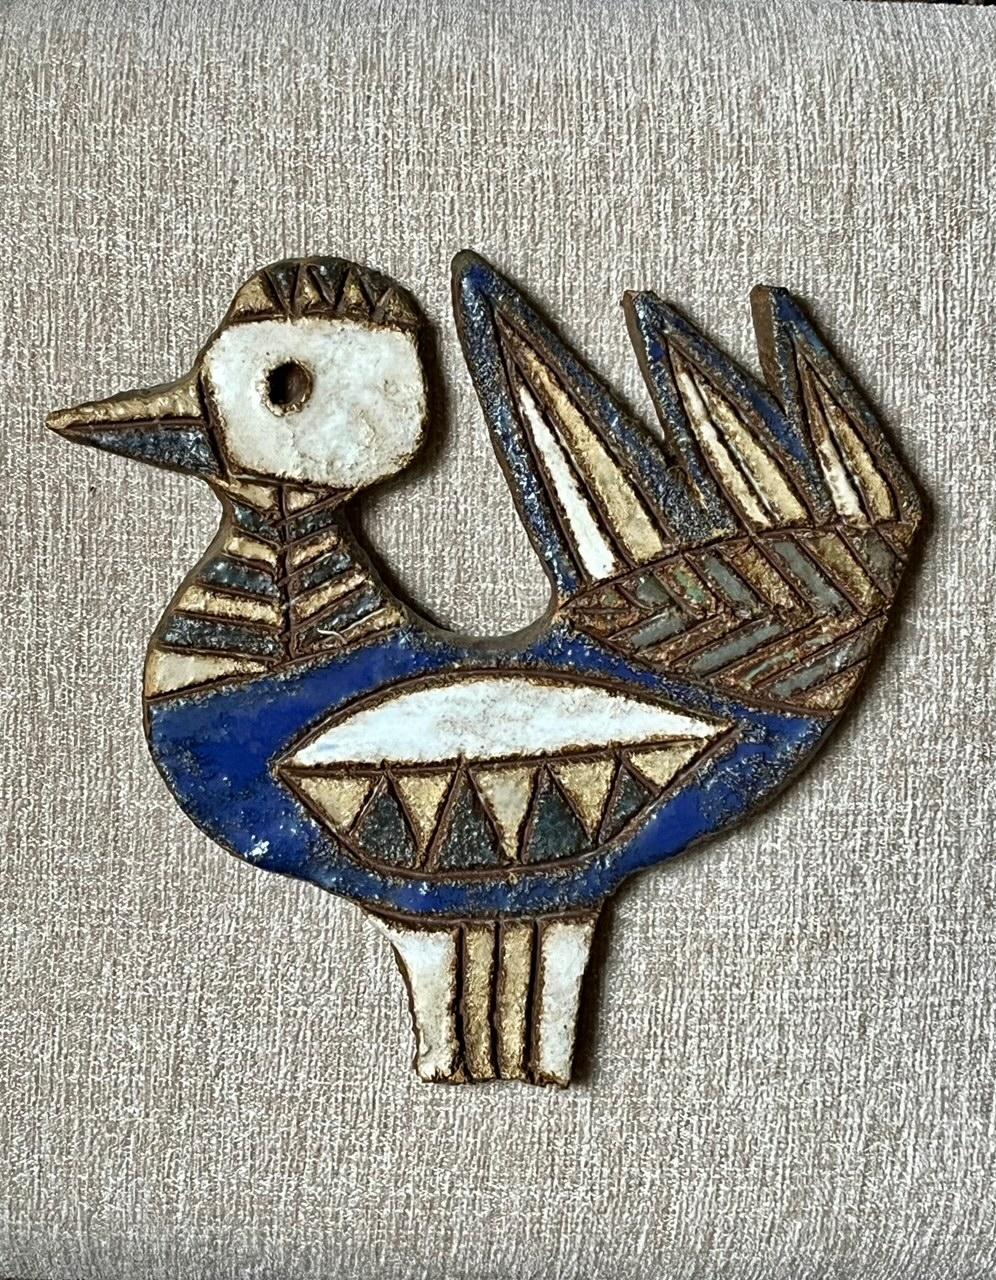 Große und ungewöhnliche Wanddekoration aus Keramik, die einen Vogel abbildet.
Glasierte Keramik in blauen, weißen, grünen und gelben Farbtönen.
Signiert auf der Rückseite 